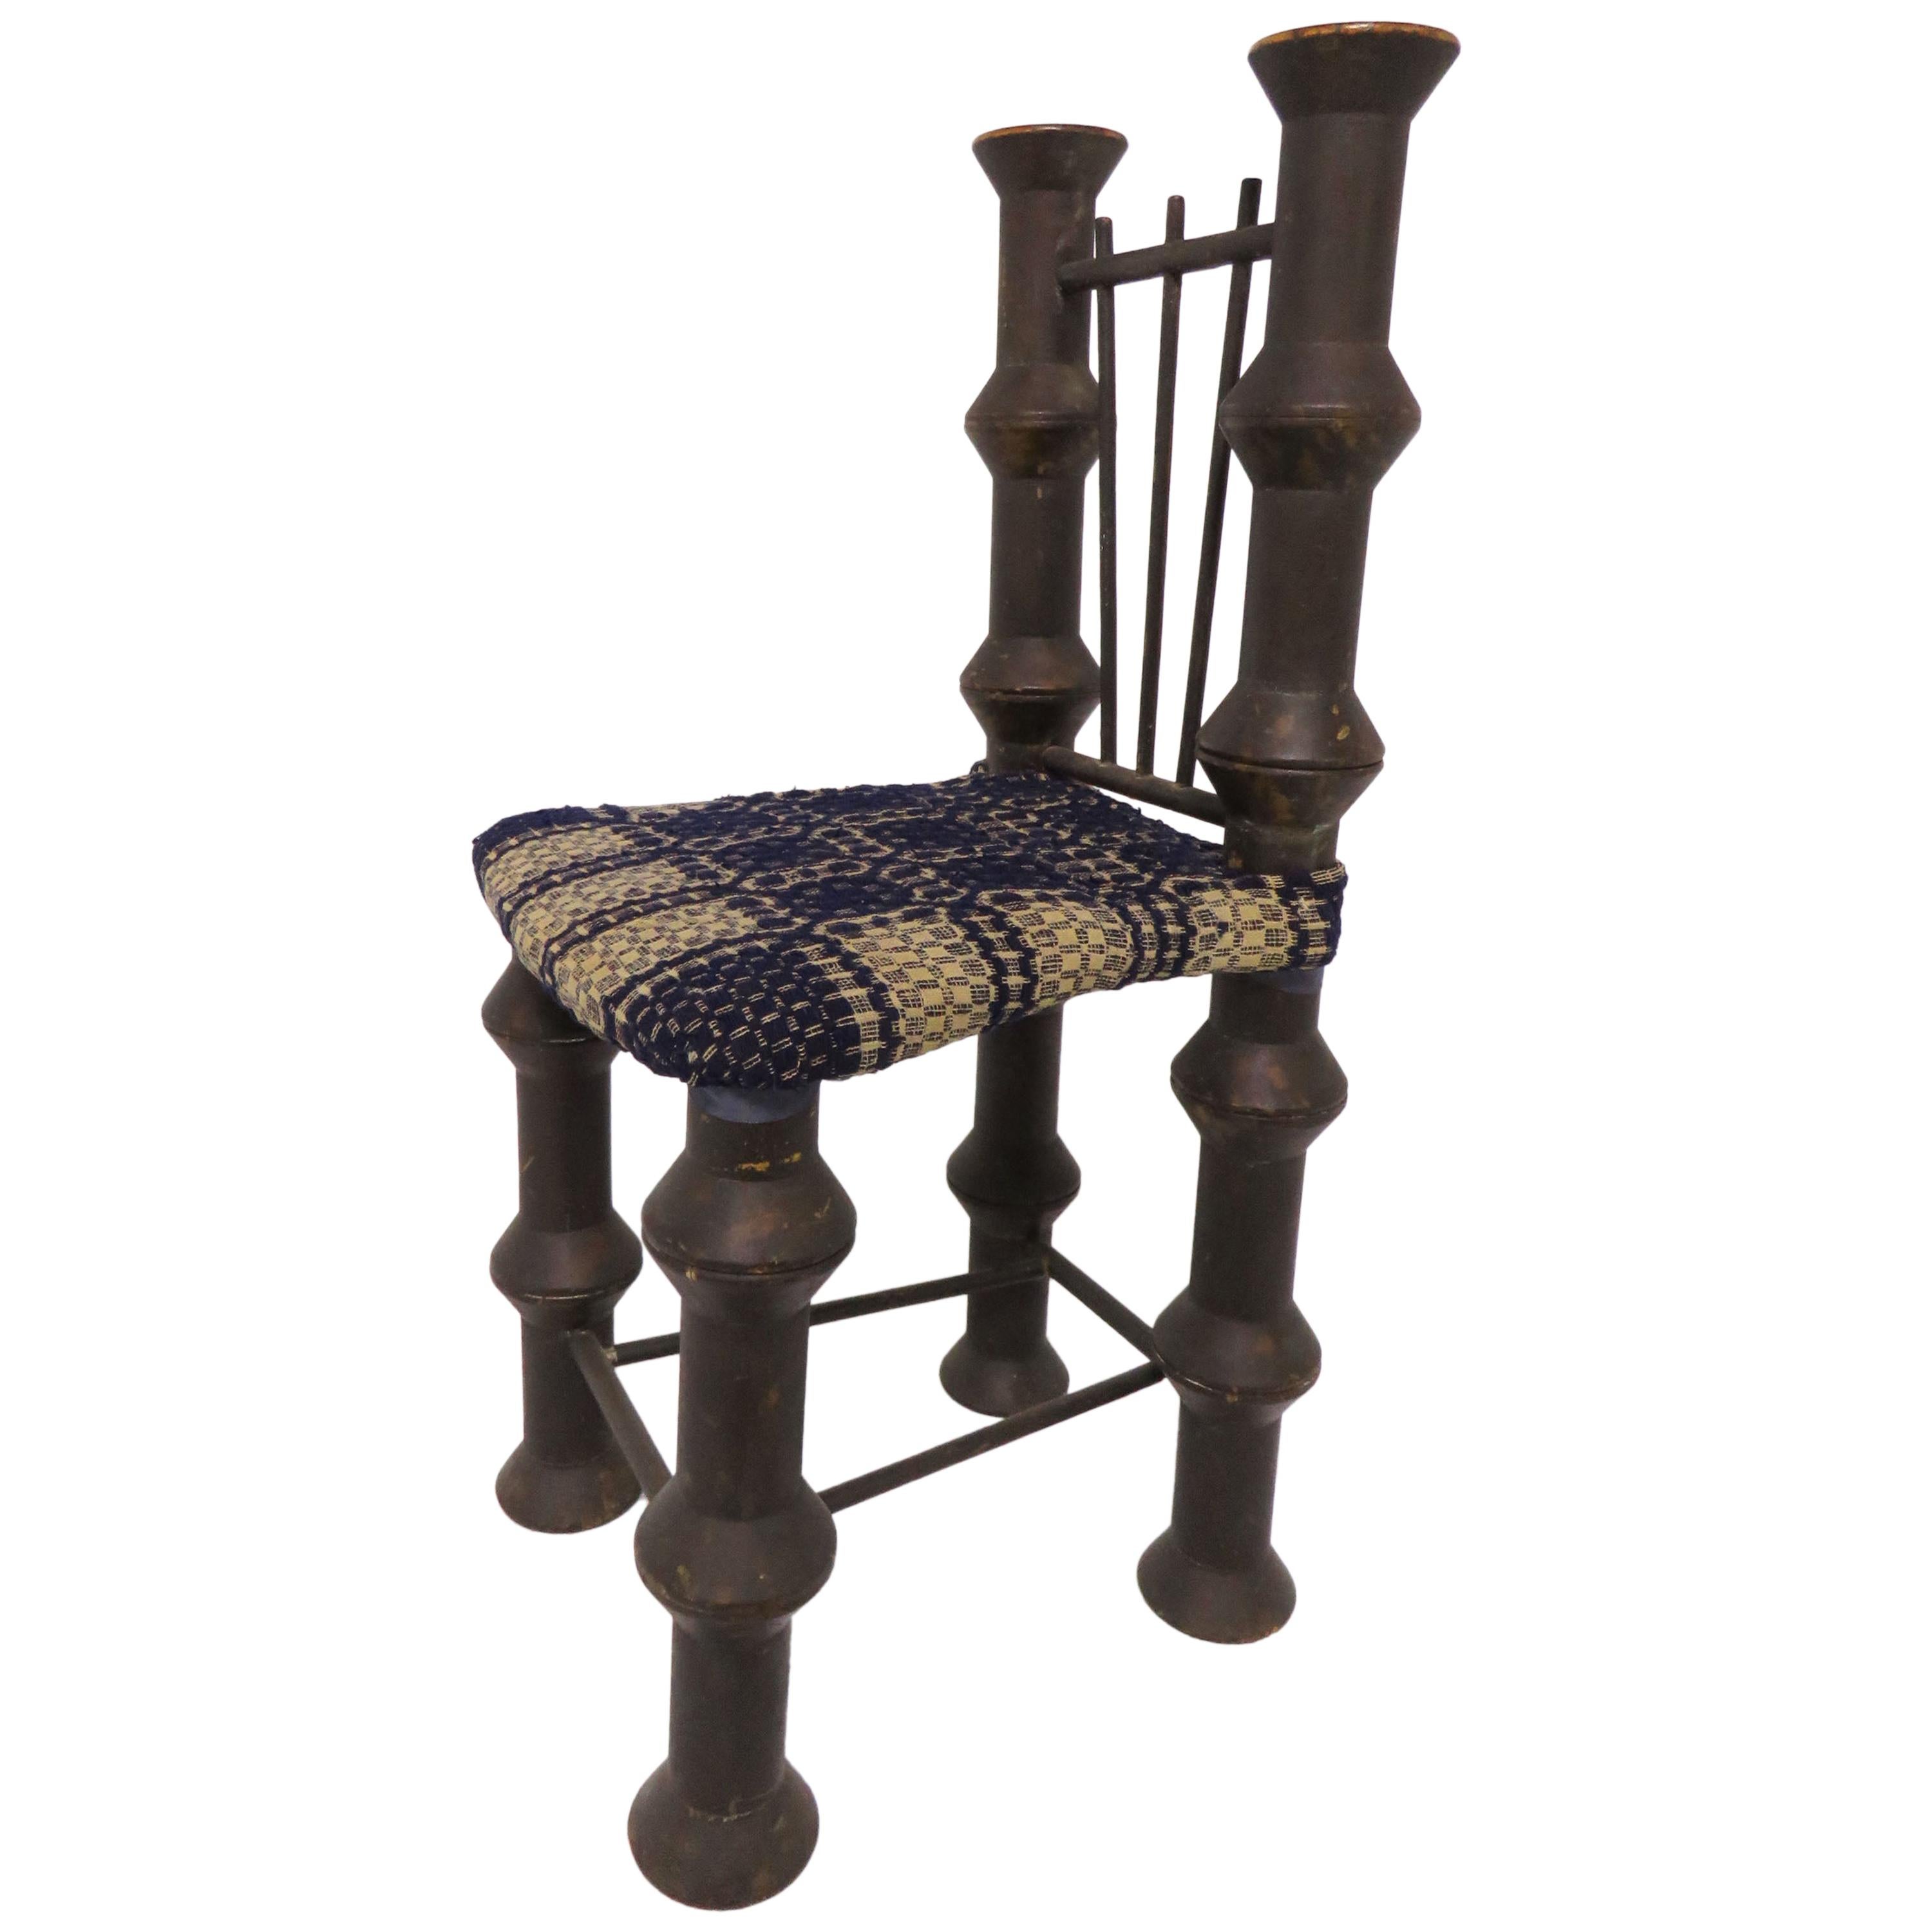 Early 20th Century Folk Art Industrial Era Spool Chair